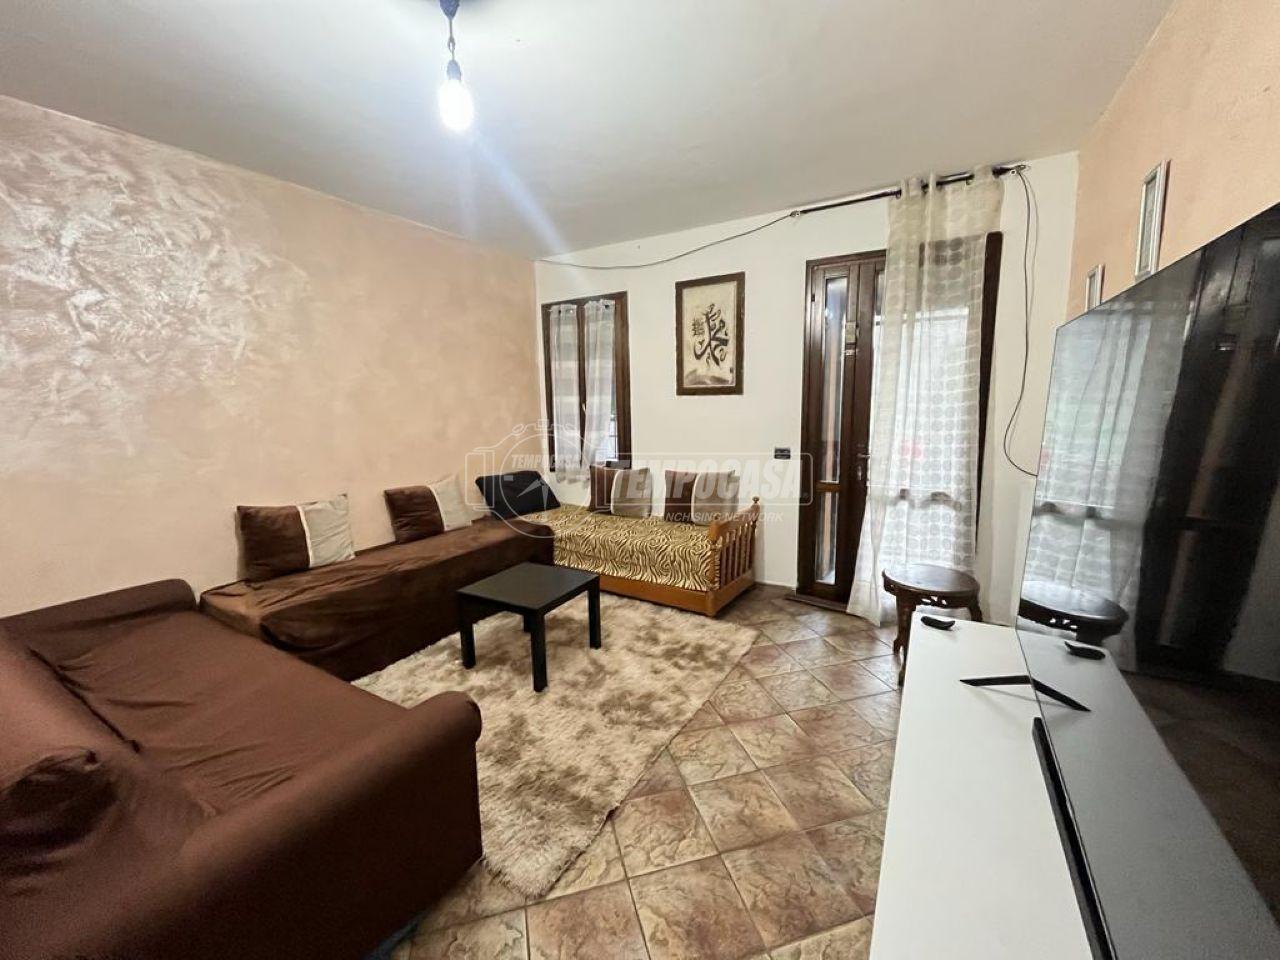 Appartamento in vendita a Serramazzoni